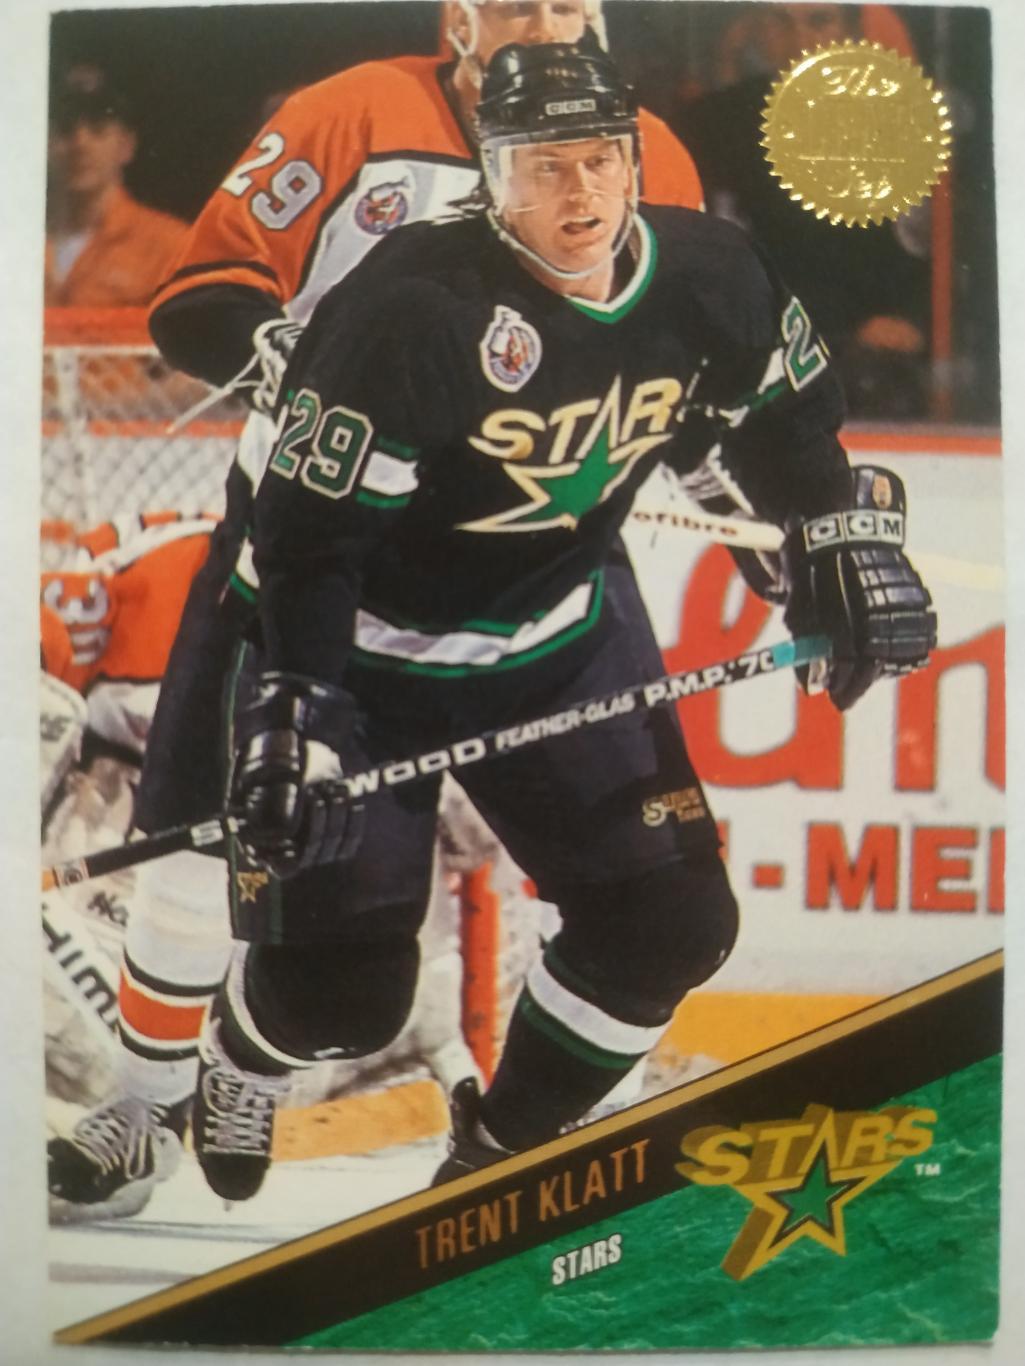 ХОККЕЙ КАРТОЧКА НХЛ LEAF SET SERIES ONE 1993-94 TRENT KLATT DALLAS STARS #14